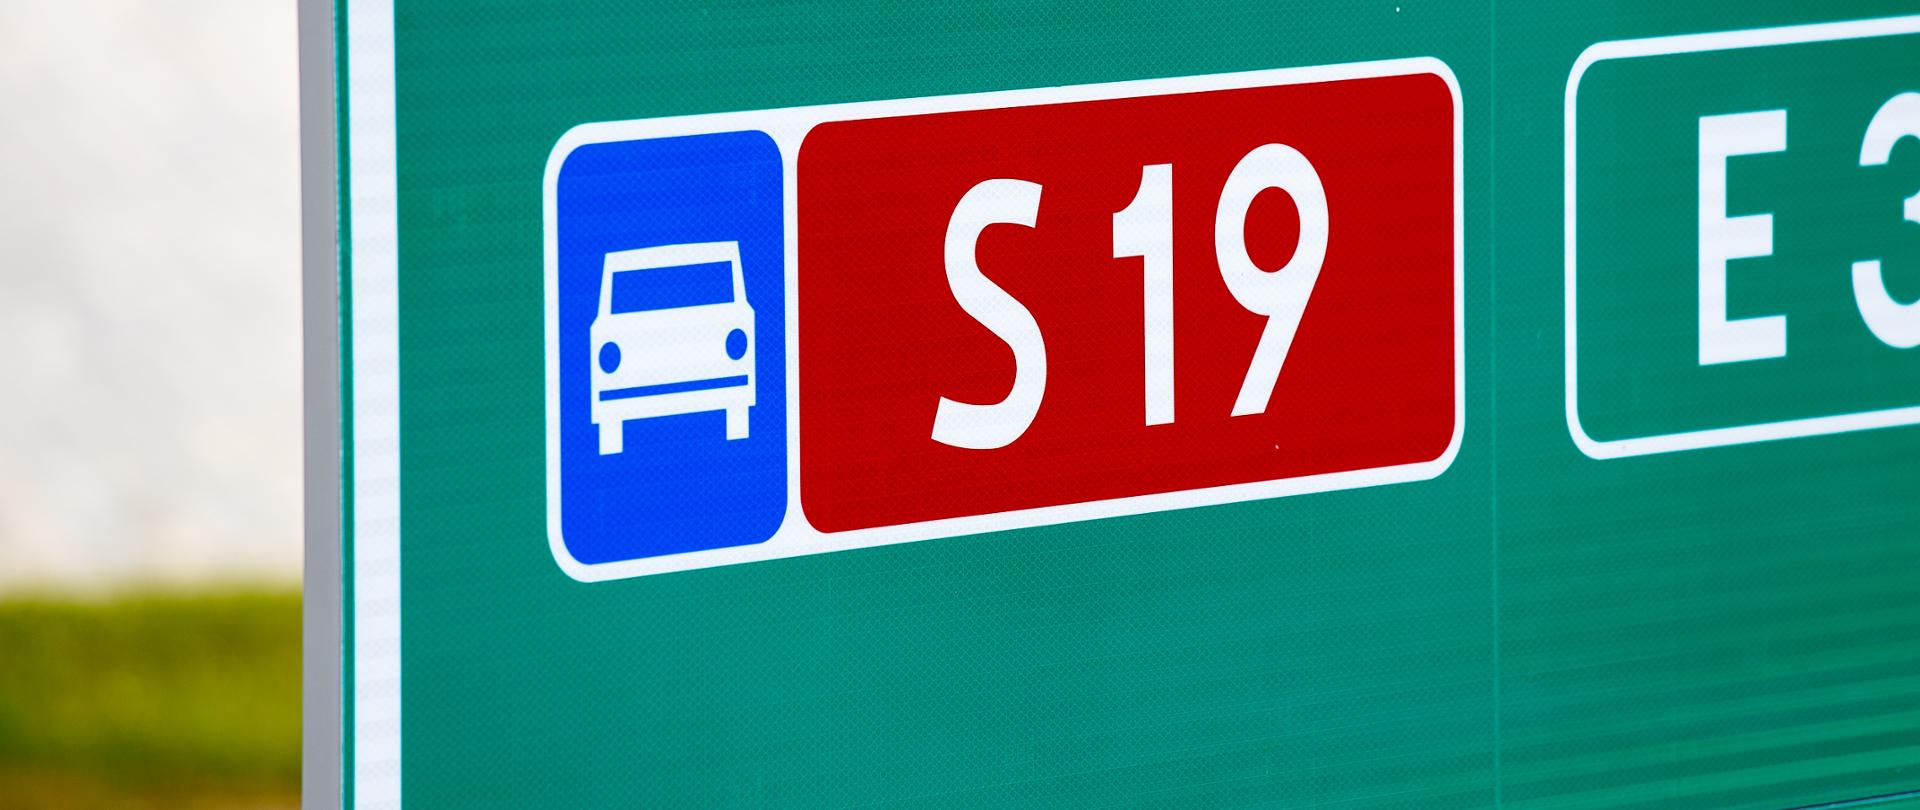 Na zdjęciu fragment tablicy z oznakowaniem drogi ekspresowej S19